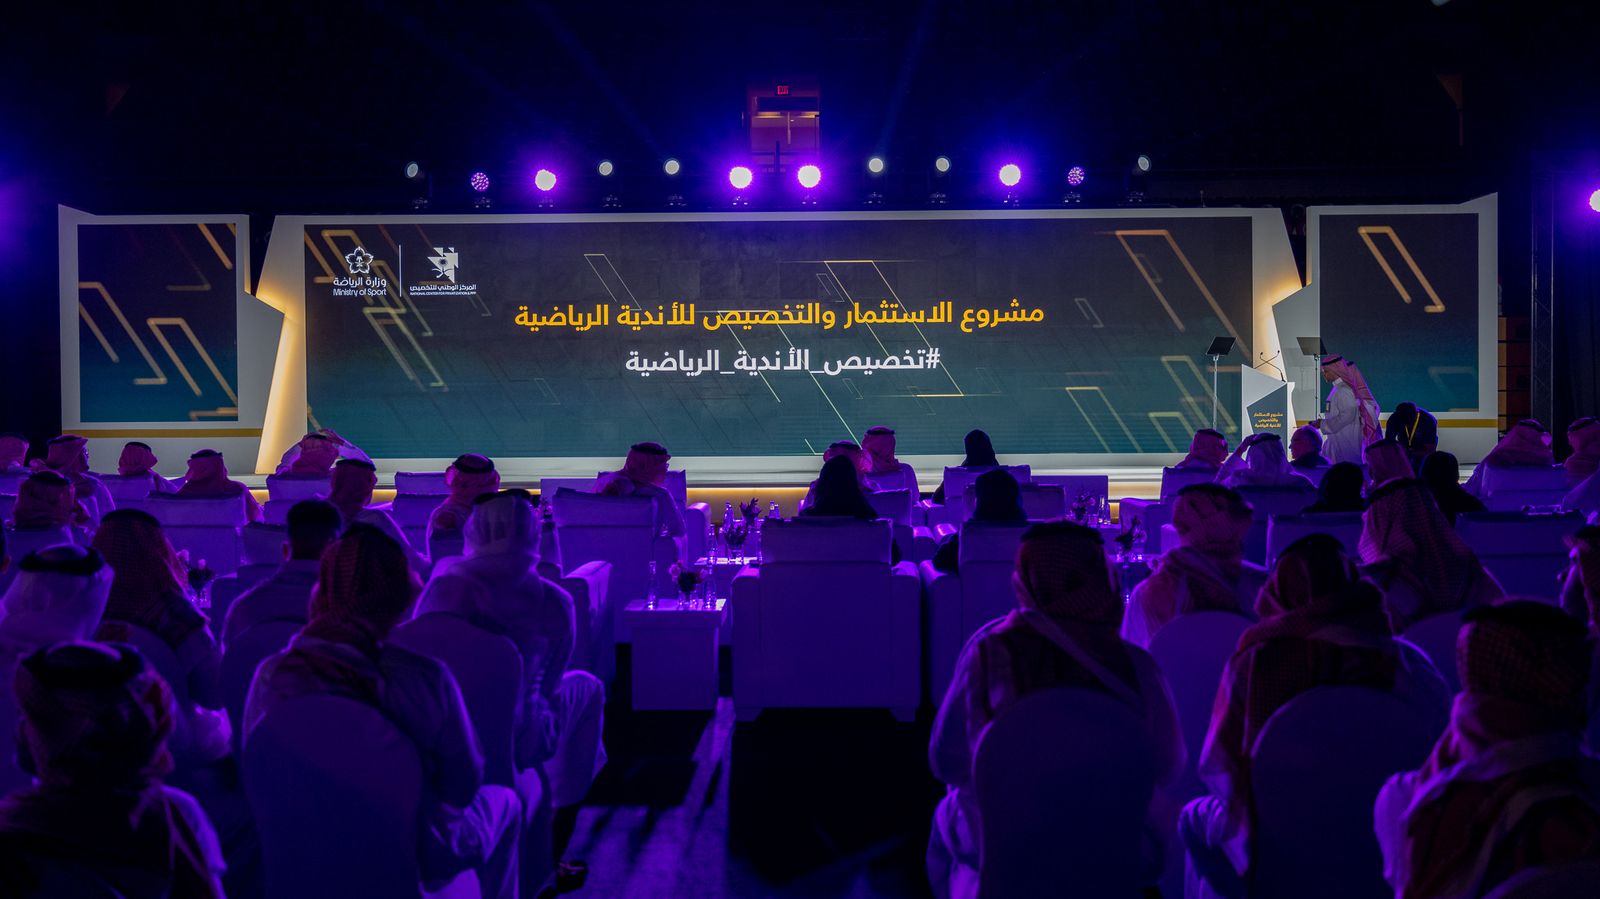 السعودية تبدأ المسار الثاني بمشروع خصخصة الأندية الرياضية